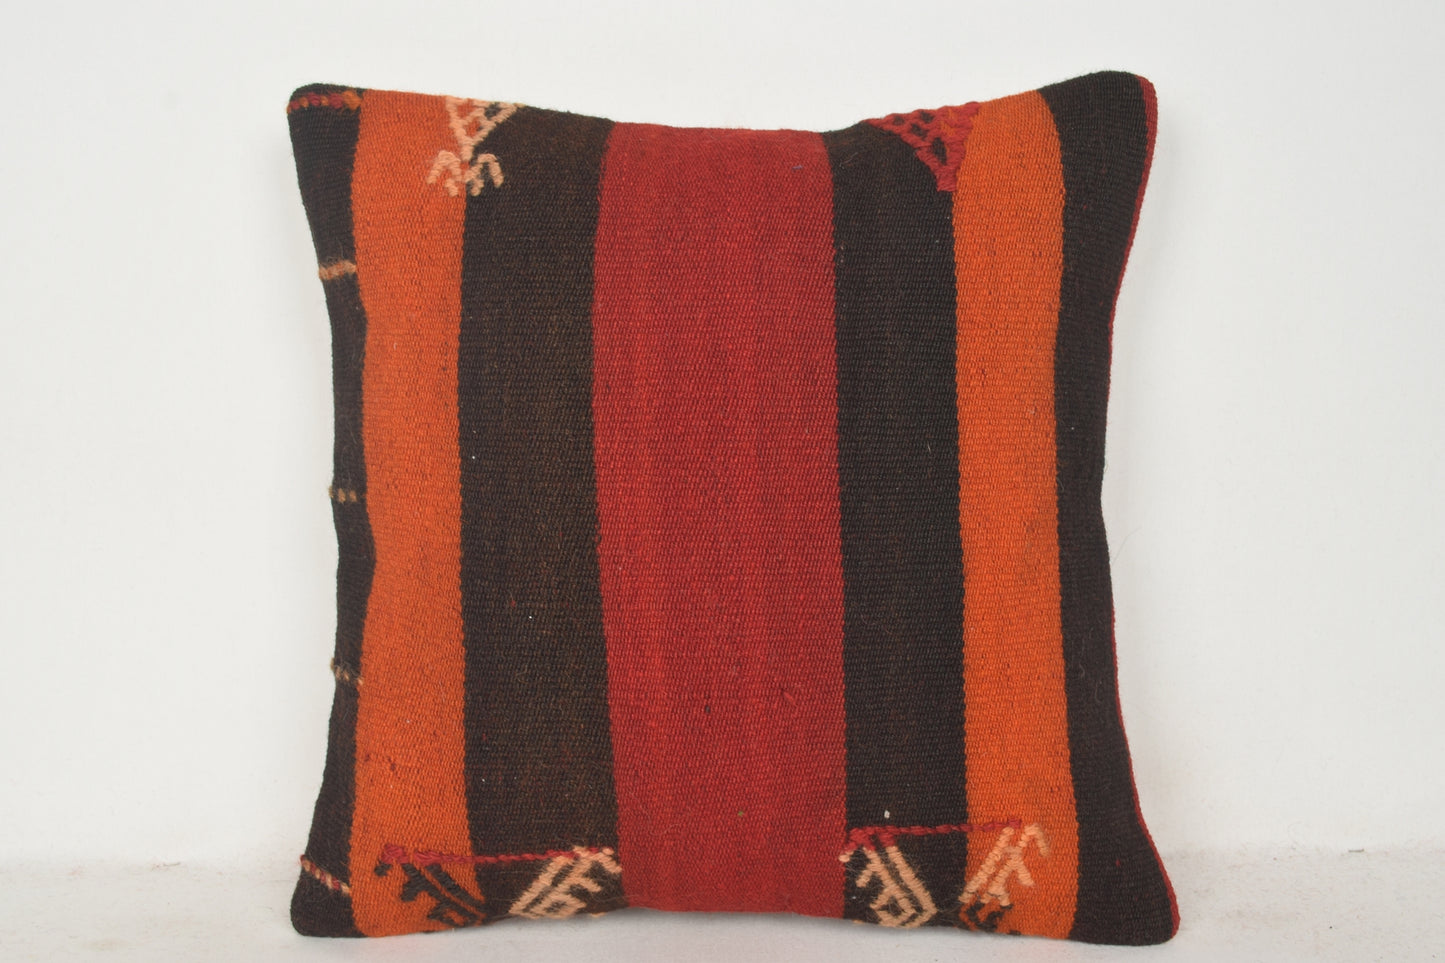 Red Orange Kilim Indoor Throw Pillows C00744 18x18 " - 45x45 cm.